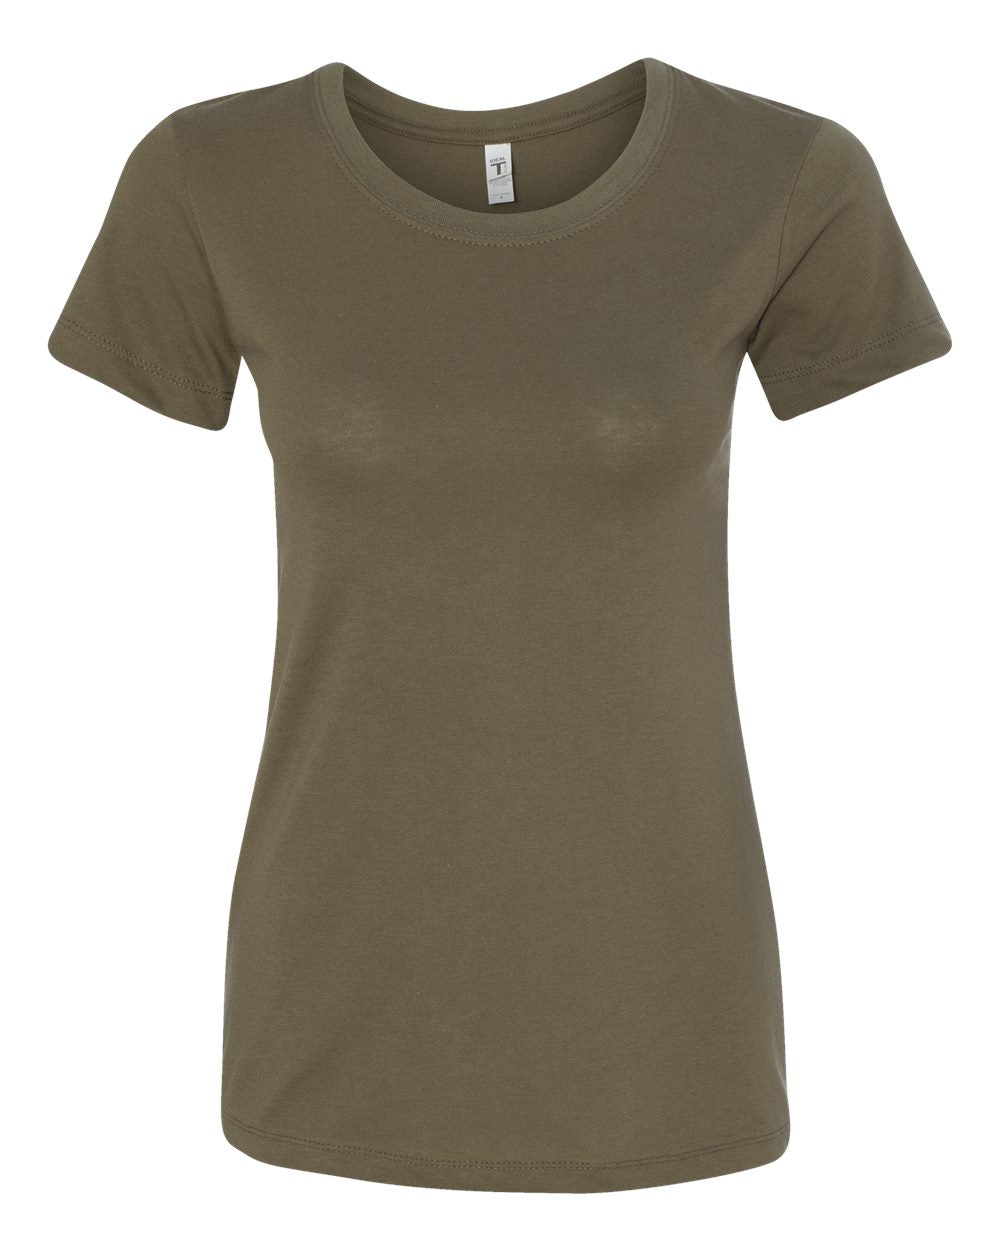 Next Level - Women's Ideal T-Shirt - 1510